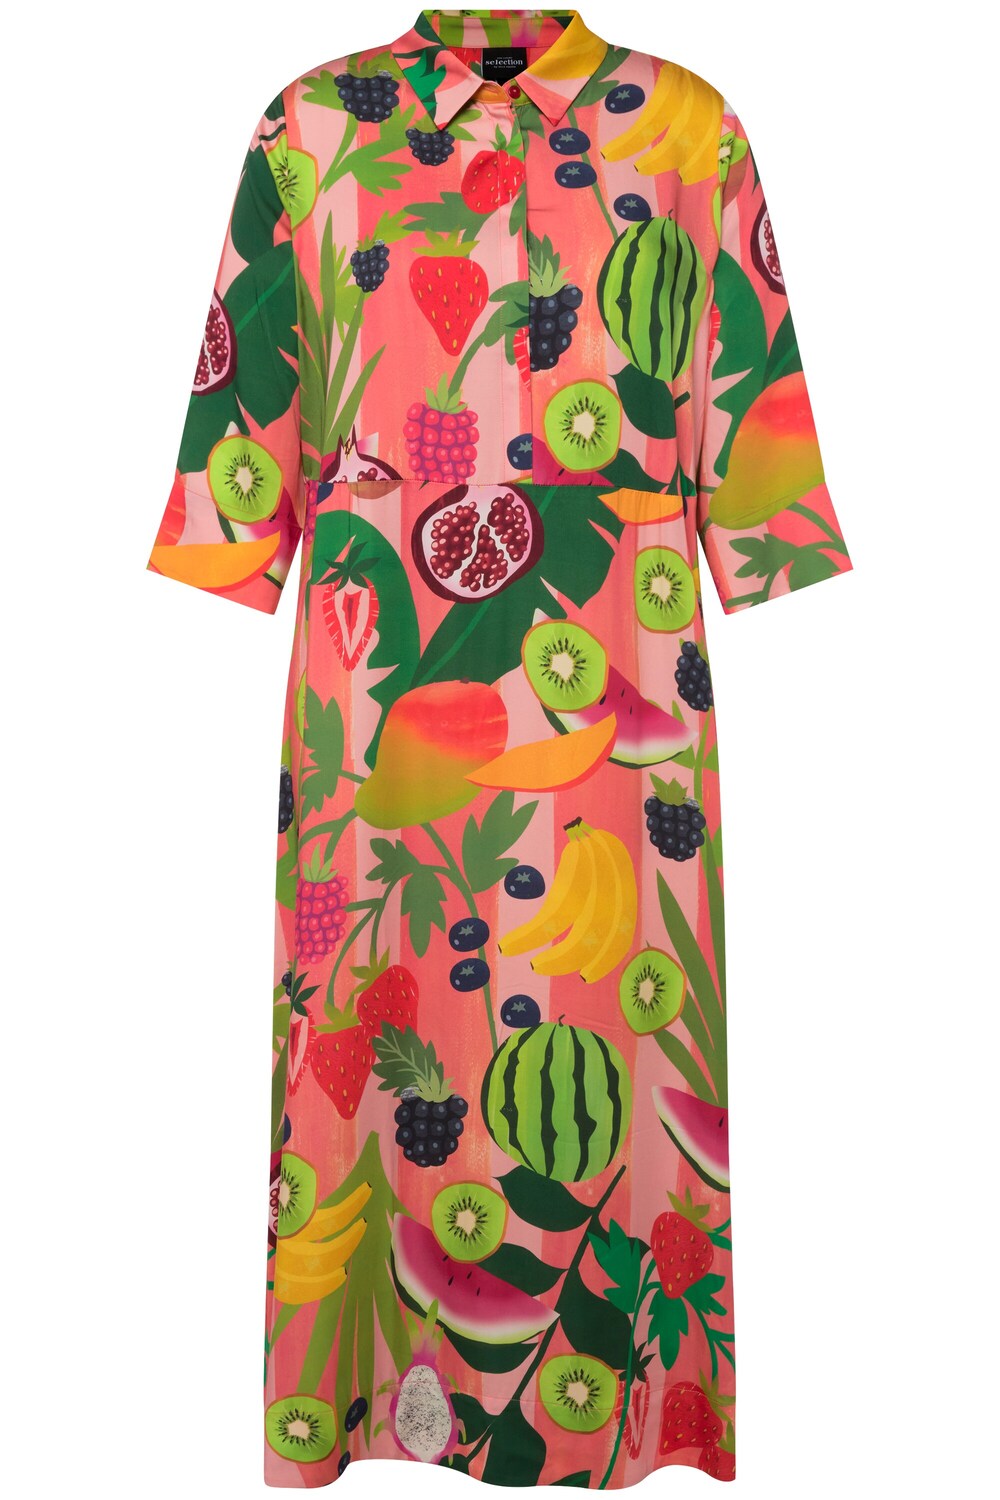 Рубашка-платье Ulla Popken, смешанные цвета